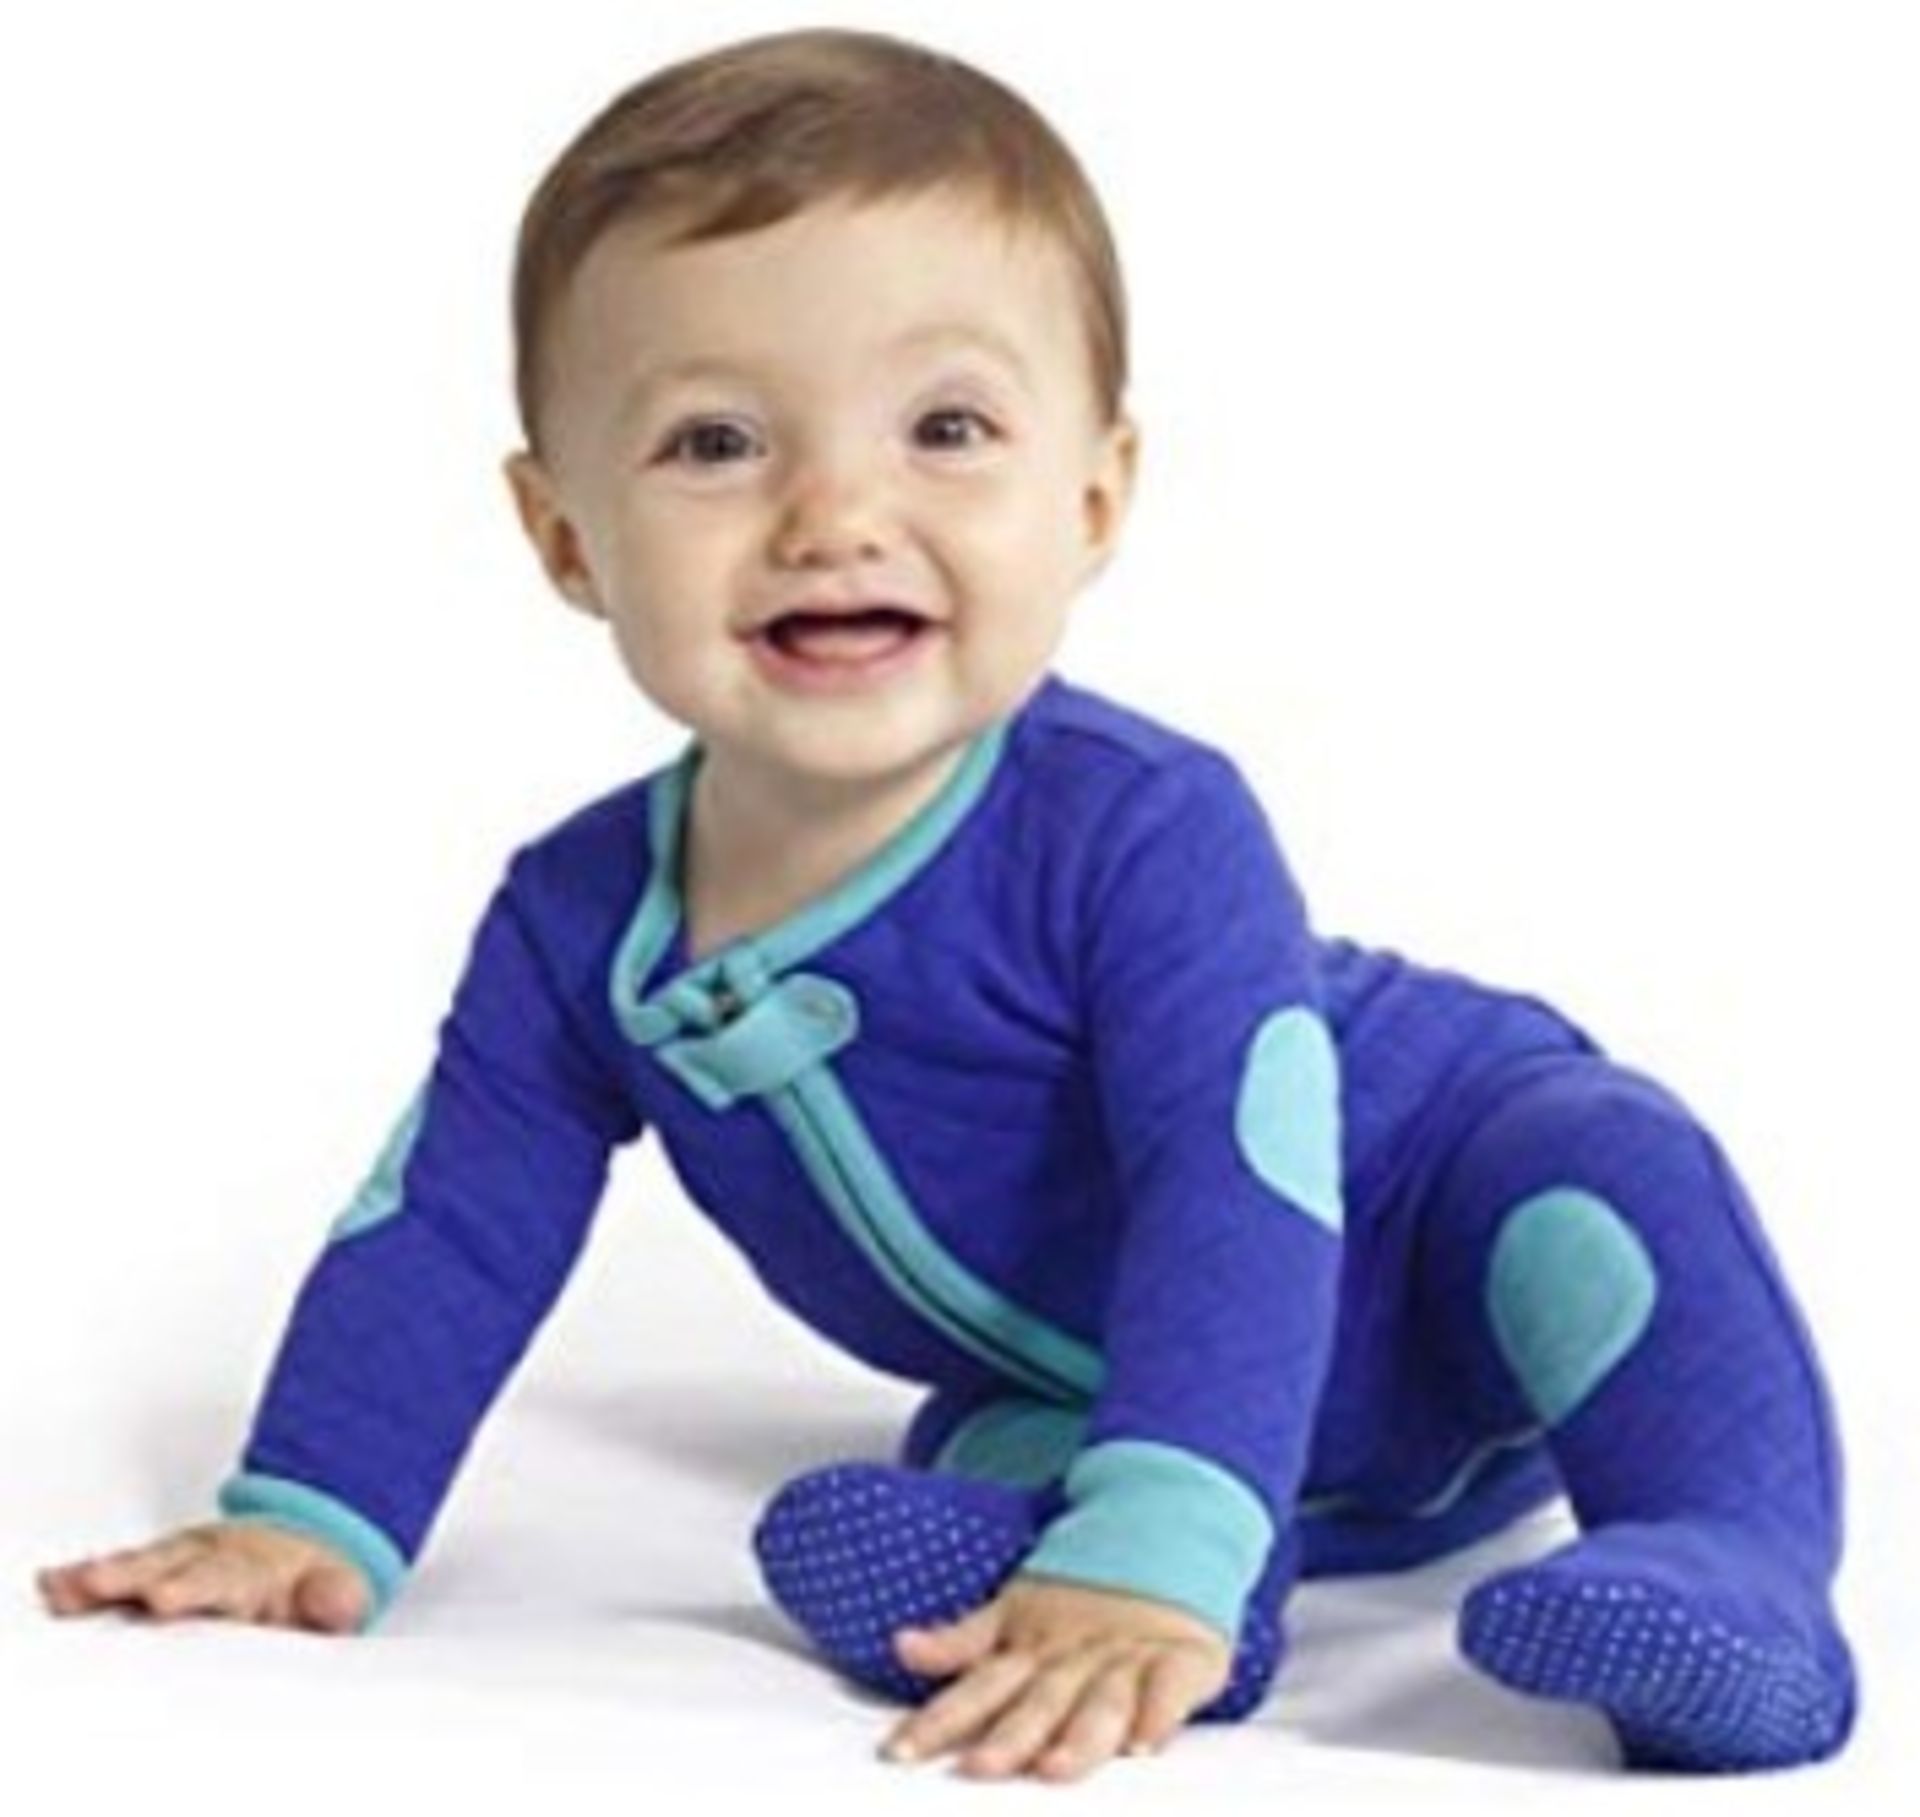 Brand New Baby Deedee Sleepsie Footie Pajamas, Peacock, 3-6 months RRP £12.99